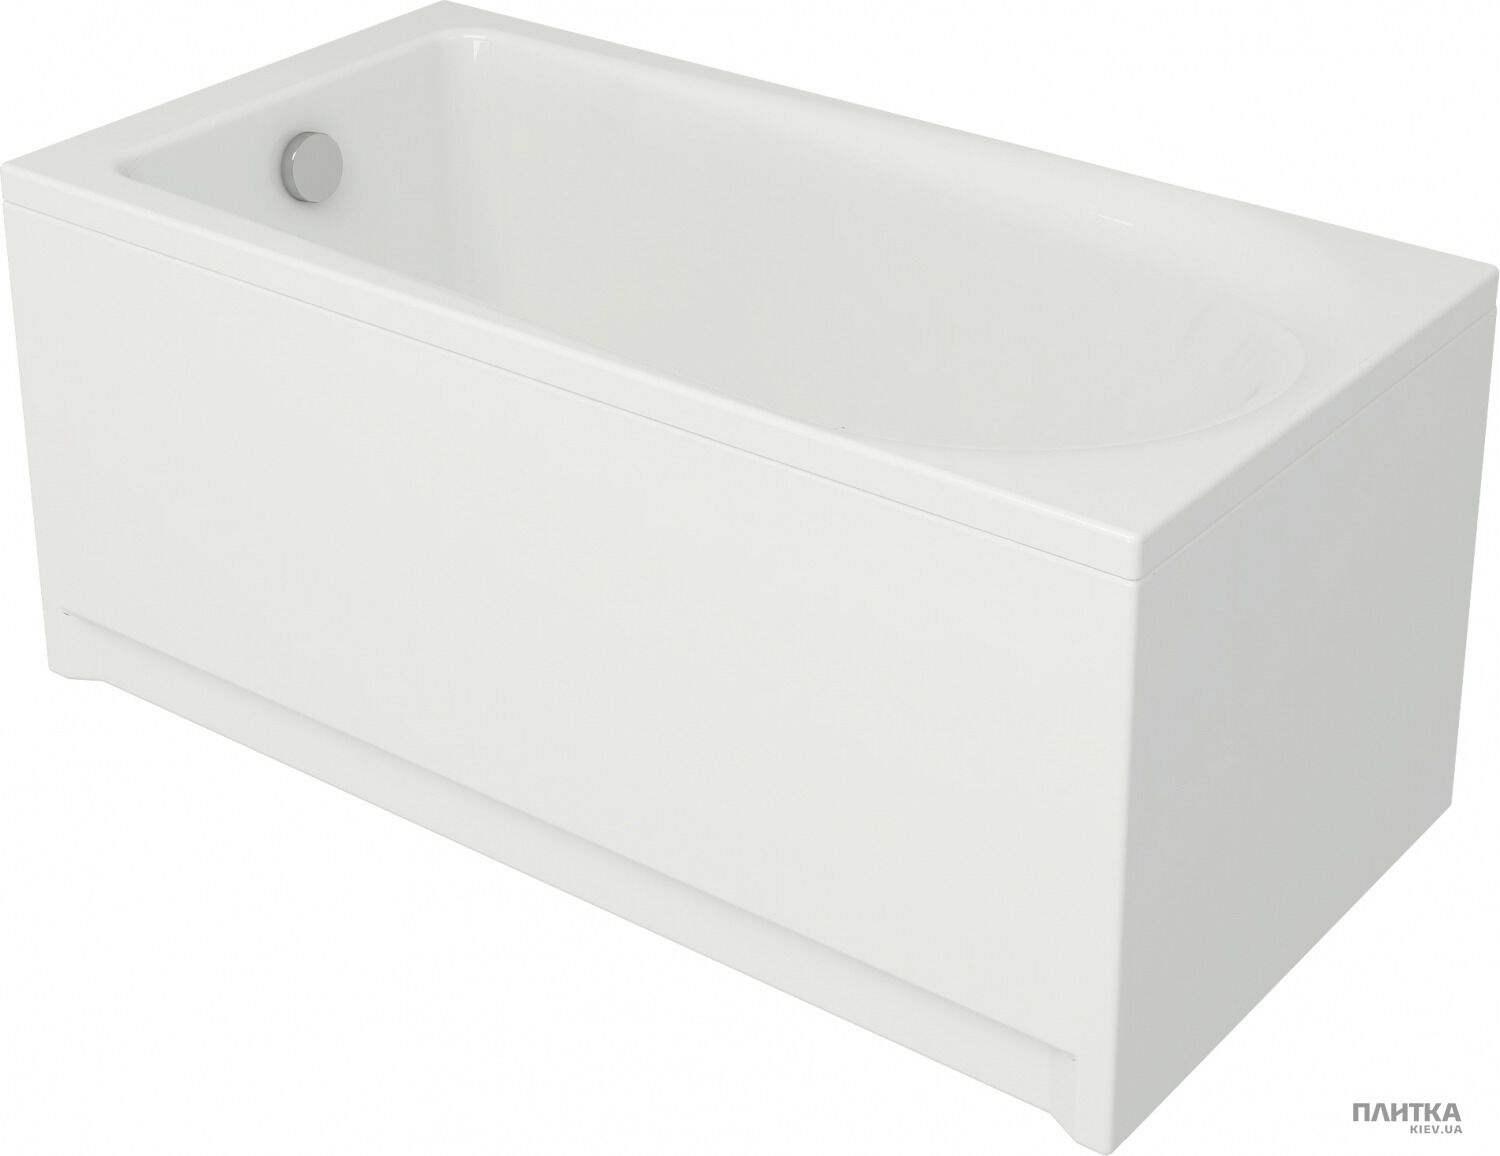 Акрилова ванна Cersanit Flavia 150x70 см білий